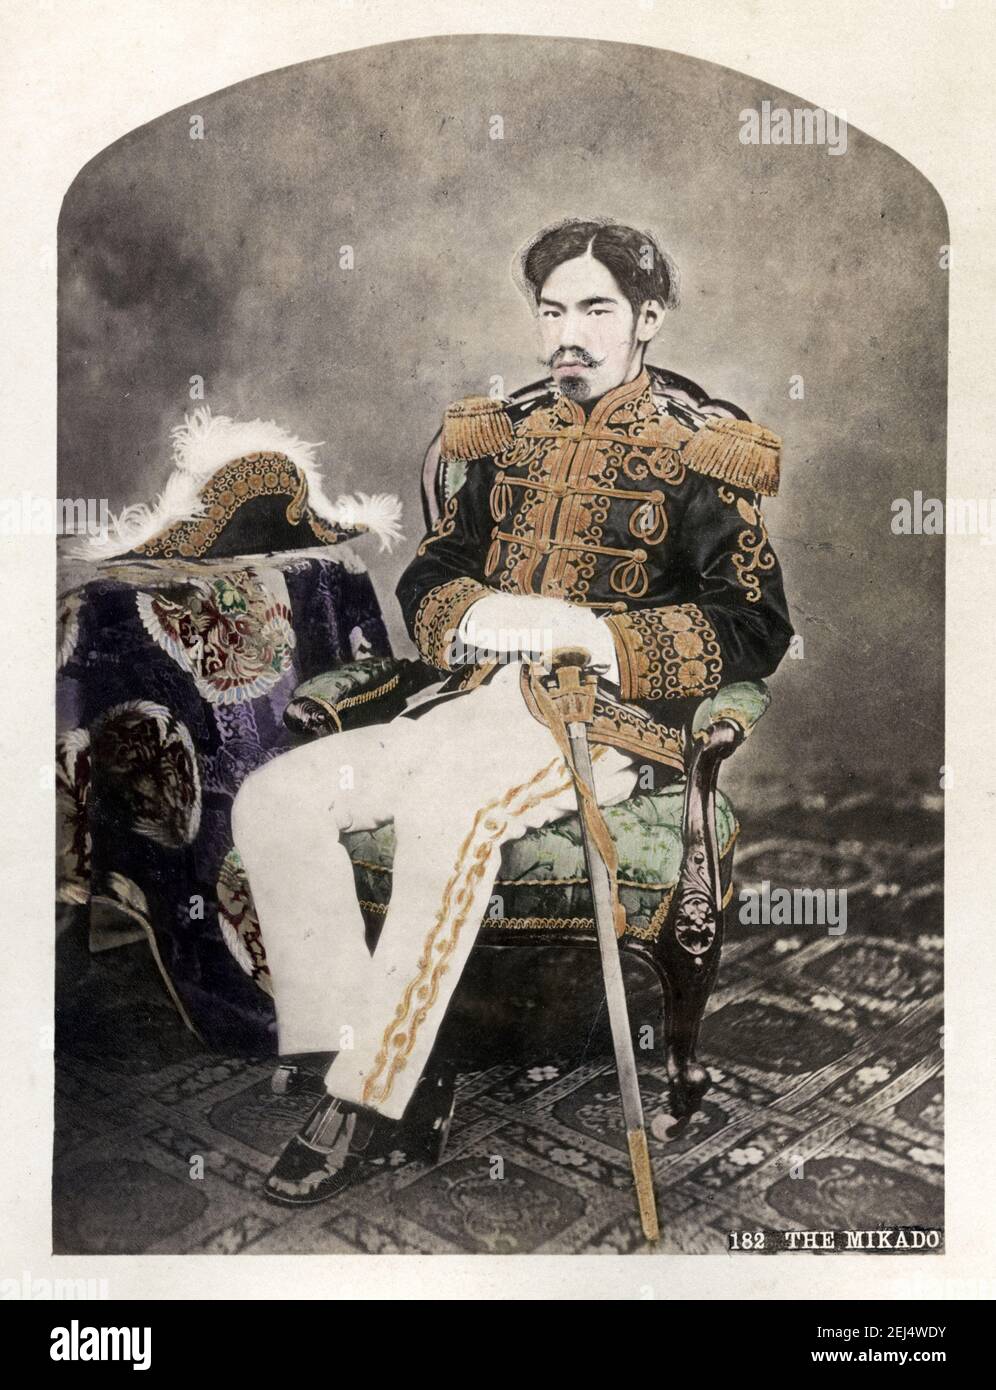 Foto d'annata della fine del XIX secolo: (明治天皇, Meiji-tennō, 3 novembre 1852 – 30 luglio 1912) imperatore giapponese Meiji, primo ritratto di Uchida Kuichi, Giappone c.1872. L'imperatore giapponese Meiji, primo ritratto di Uchida Kuichi Foto Stock